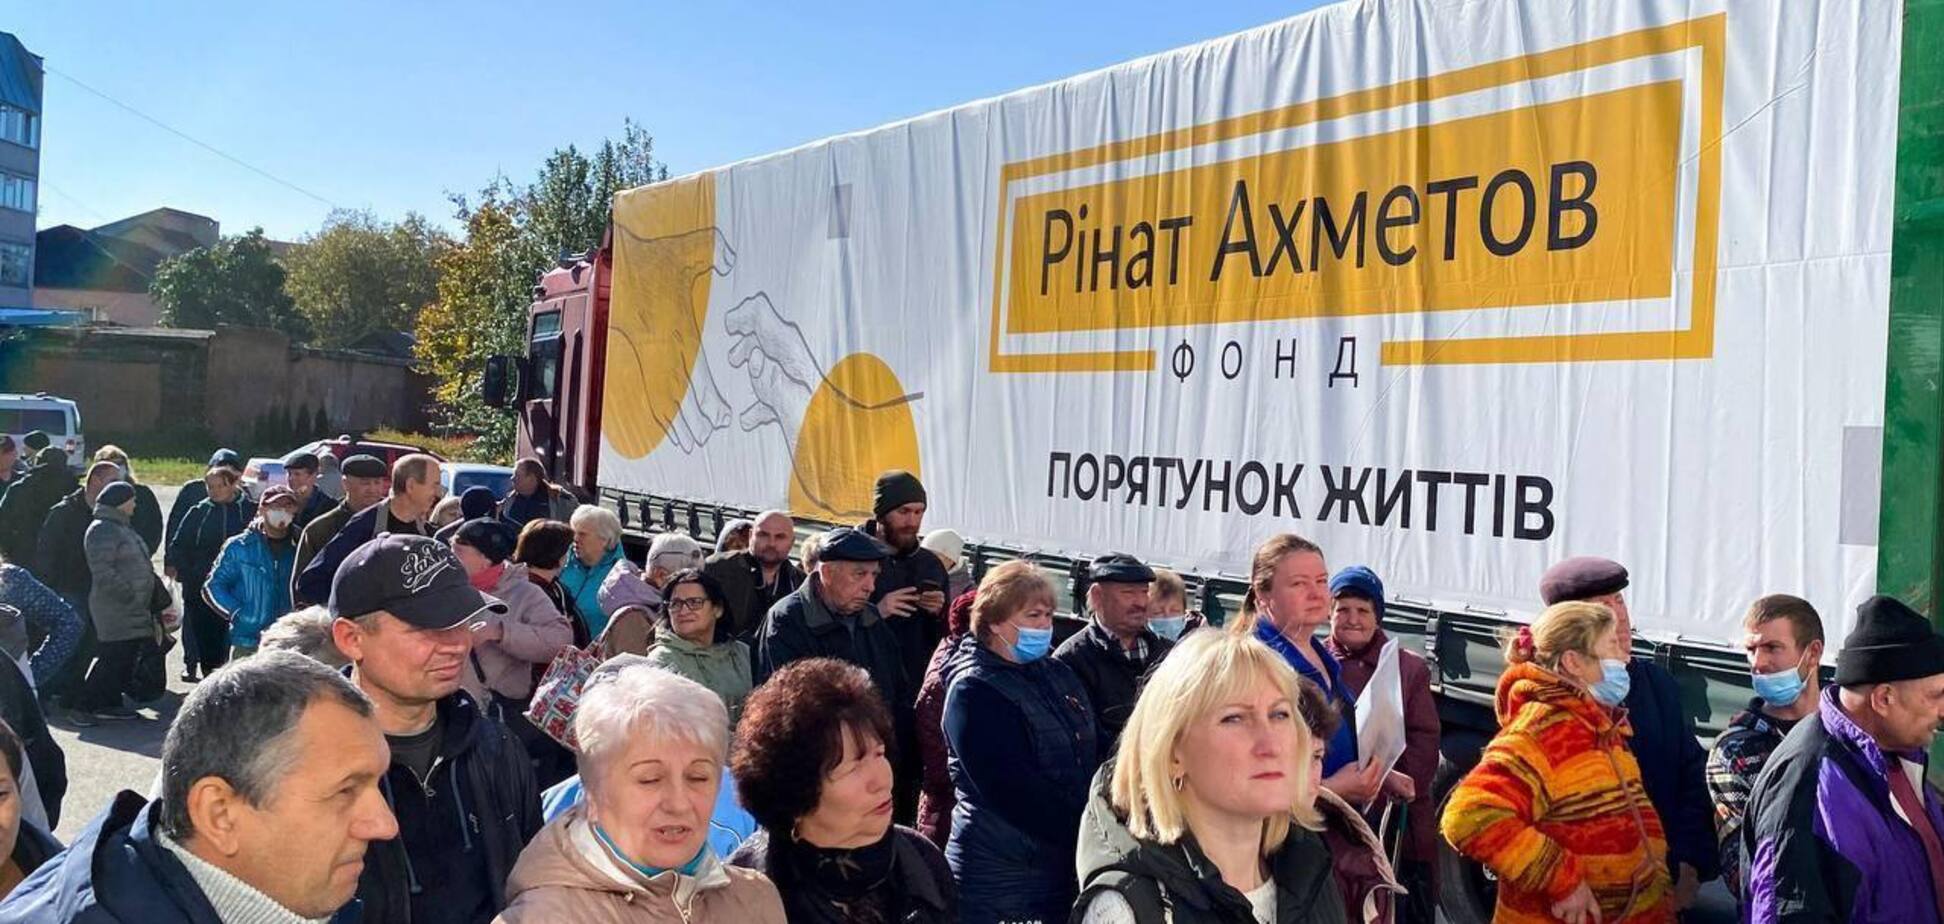 Мешканці Охтирки отримали велику партію гуманітарної допомоги від Фонду Ахметова